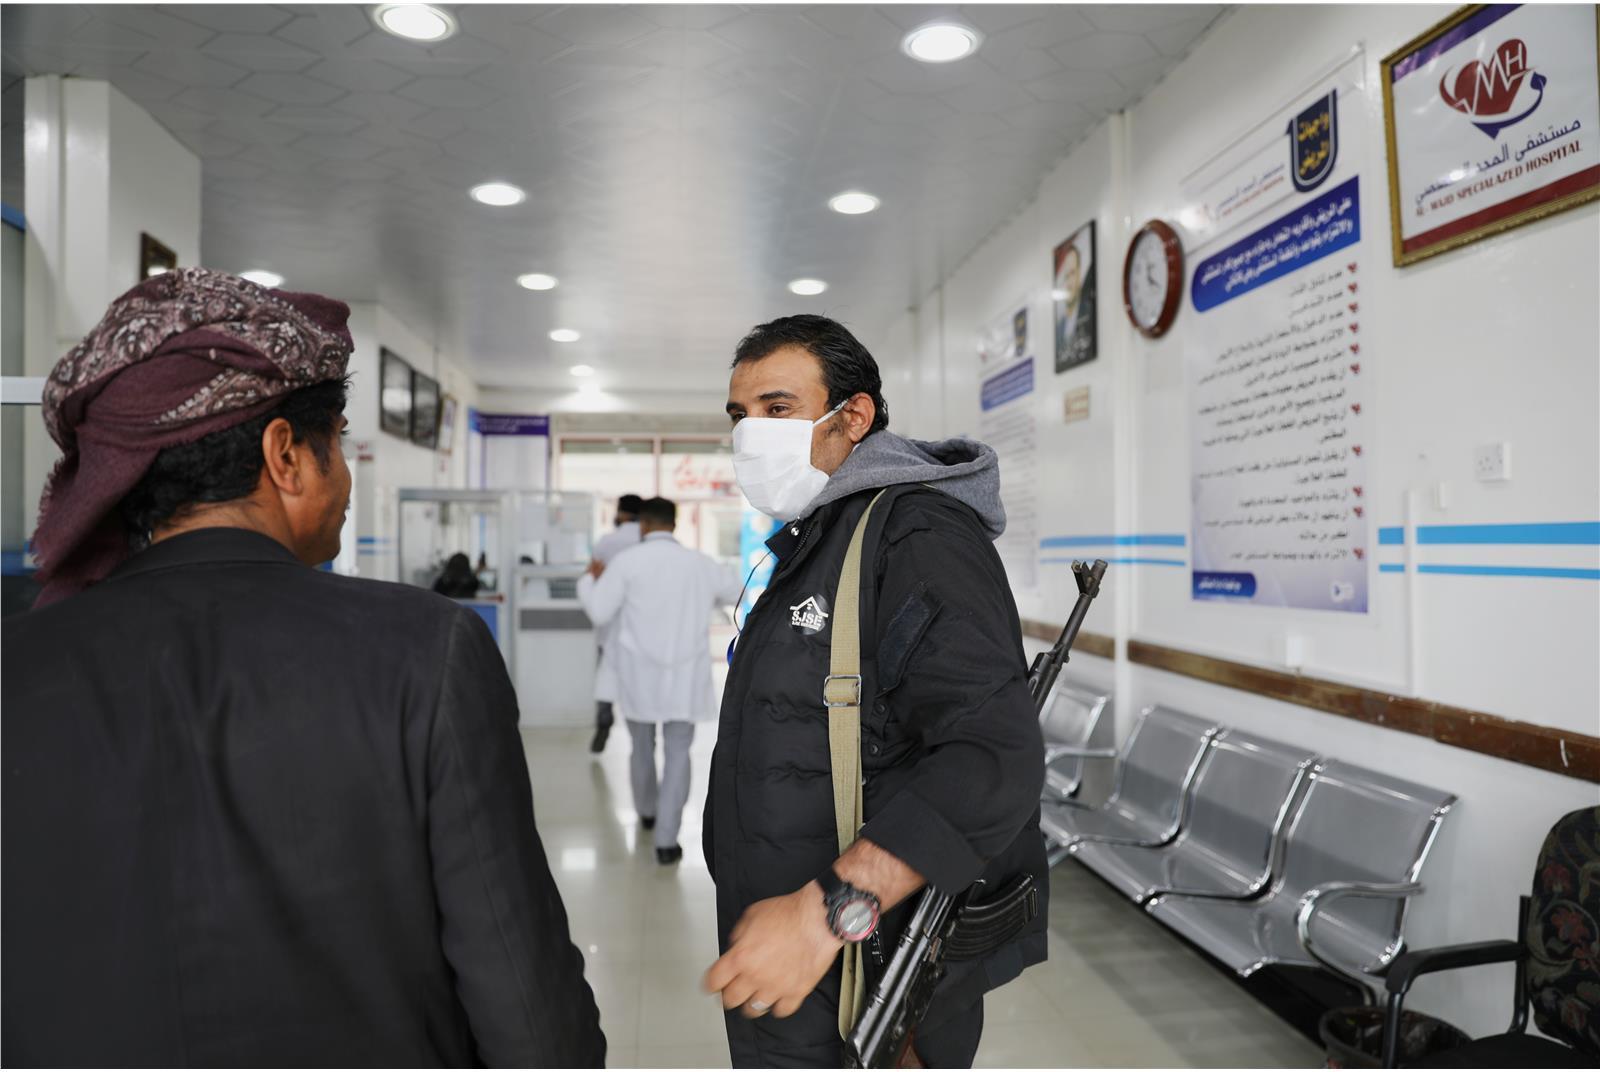 فريق الخبراء الدوليين يطالب بإطلاق سراح المحتجزين في اليمن لمحاربة تفشي وباء “كورونا”